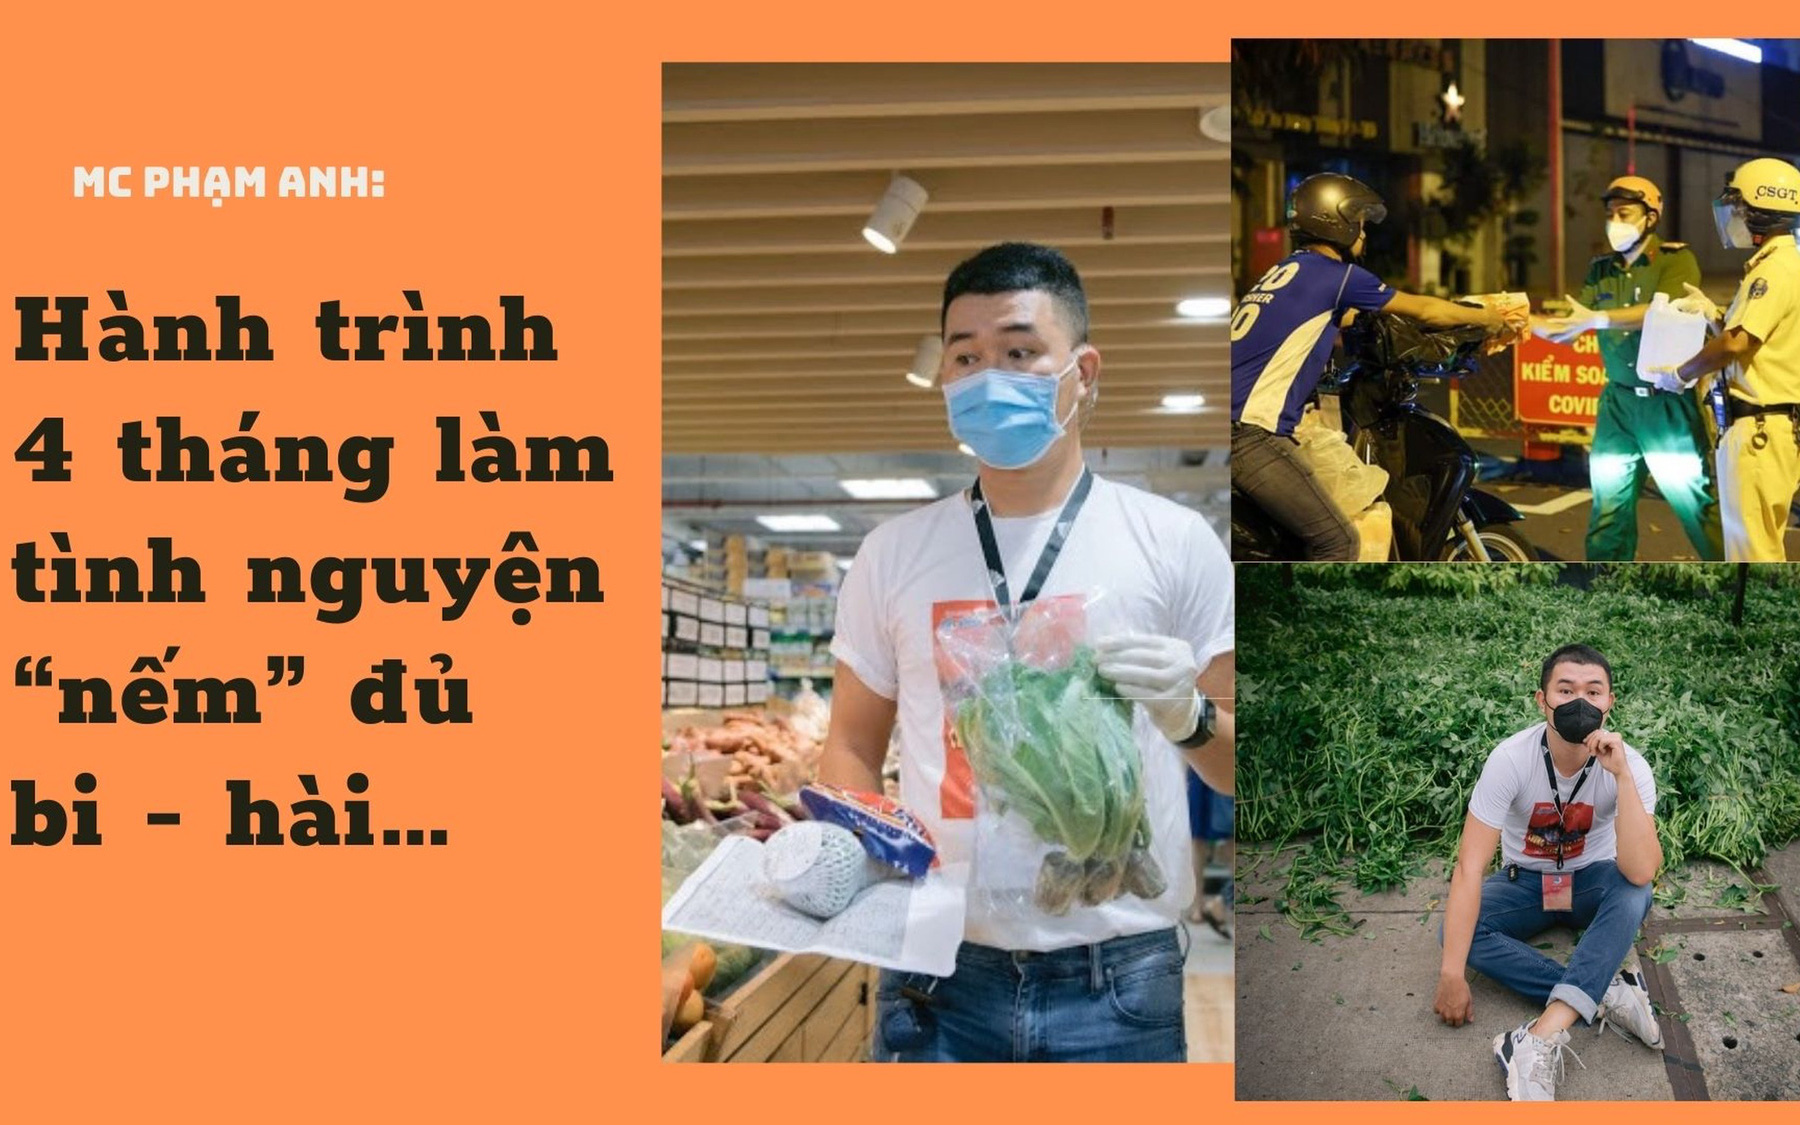 MC Phạm Anh: Hành trình 4 tháng làm tình nguyện viên “nếm” đủ bi - hài…